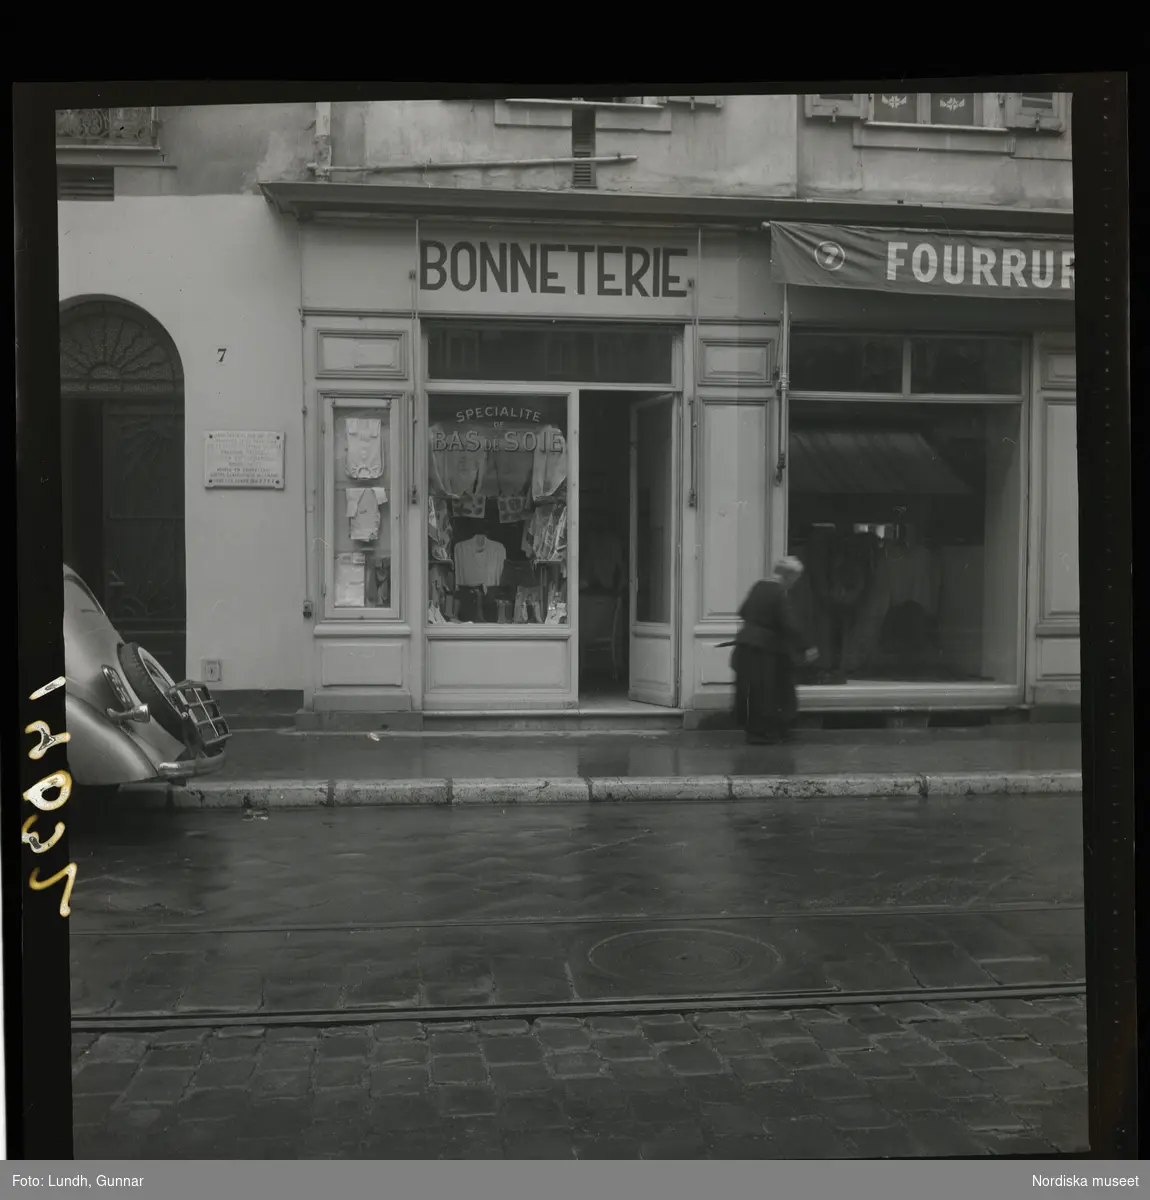 1950. Frankrike. En kvinna gående förbi en trikåbutik